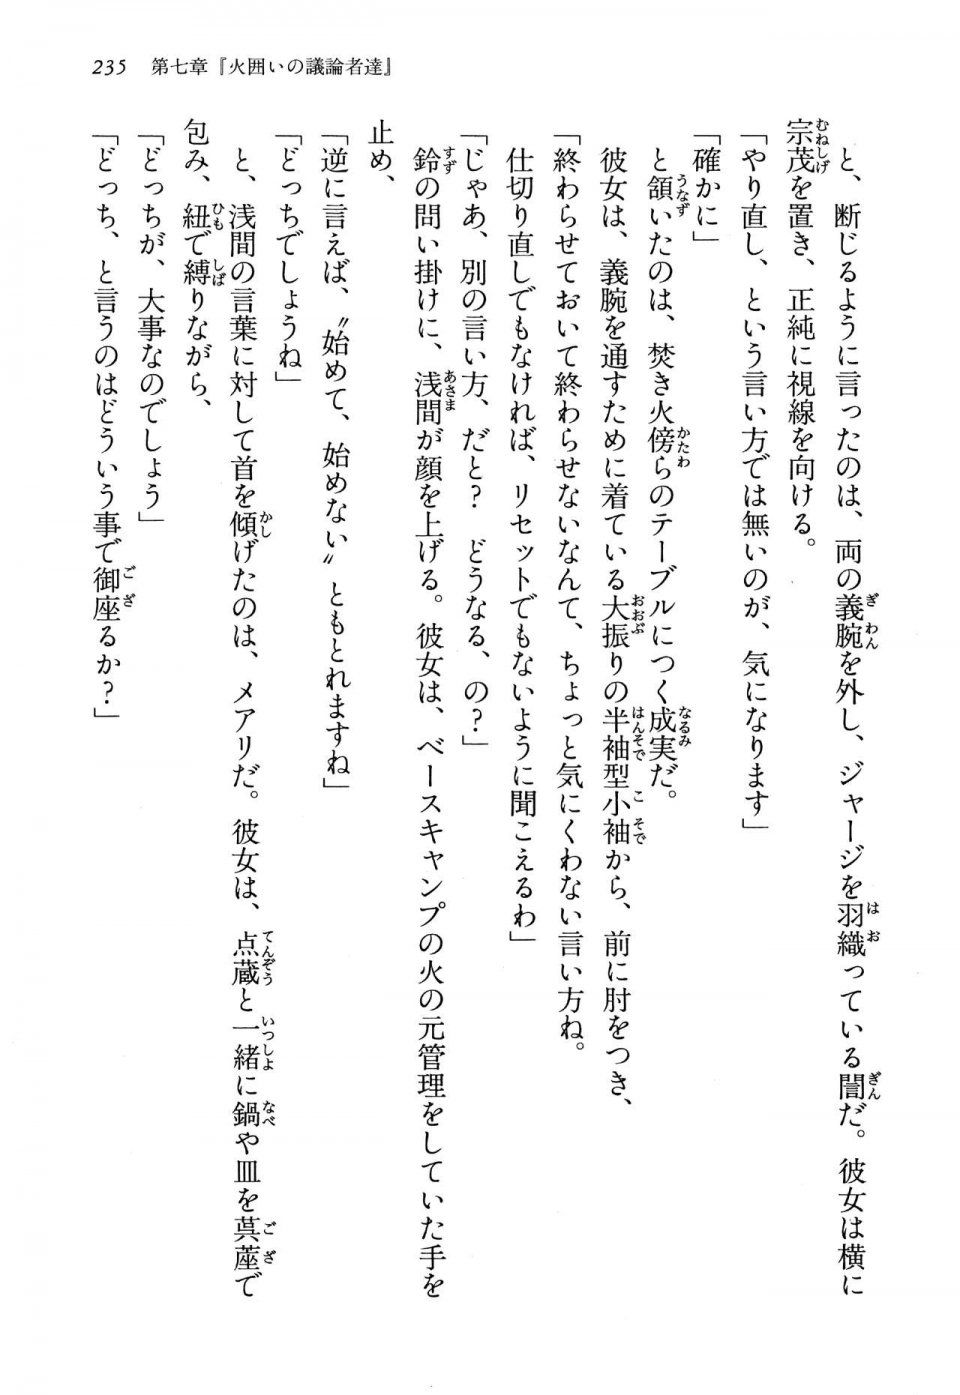 Kyoukai Senjou no Horizon LN Vol 13(6A) - Photo #235